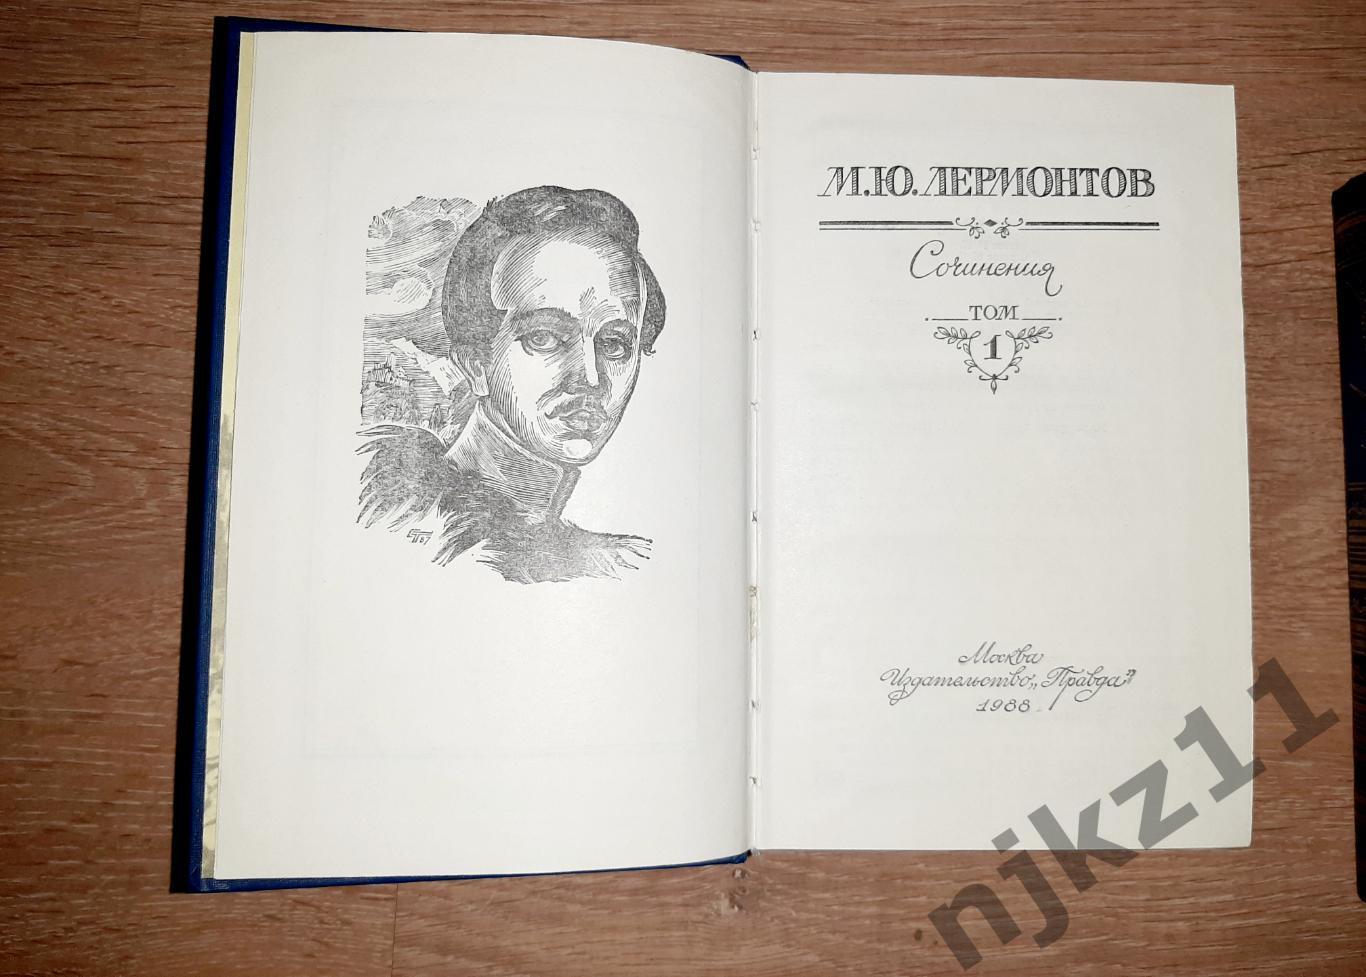 Лермонтов, М.Ю. Сочинения В 2 томах 1988 ПРАВДА 2